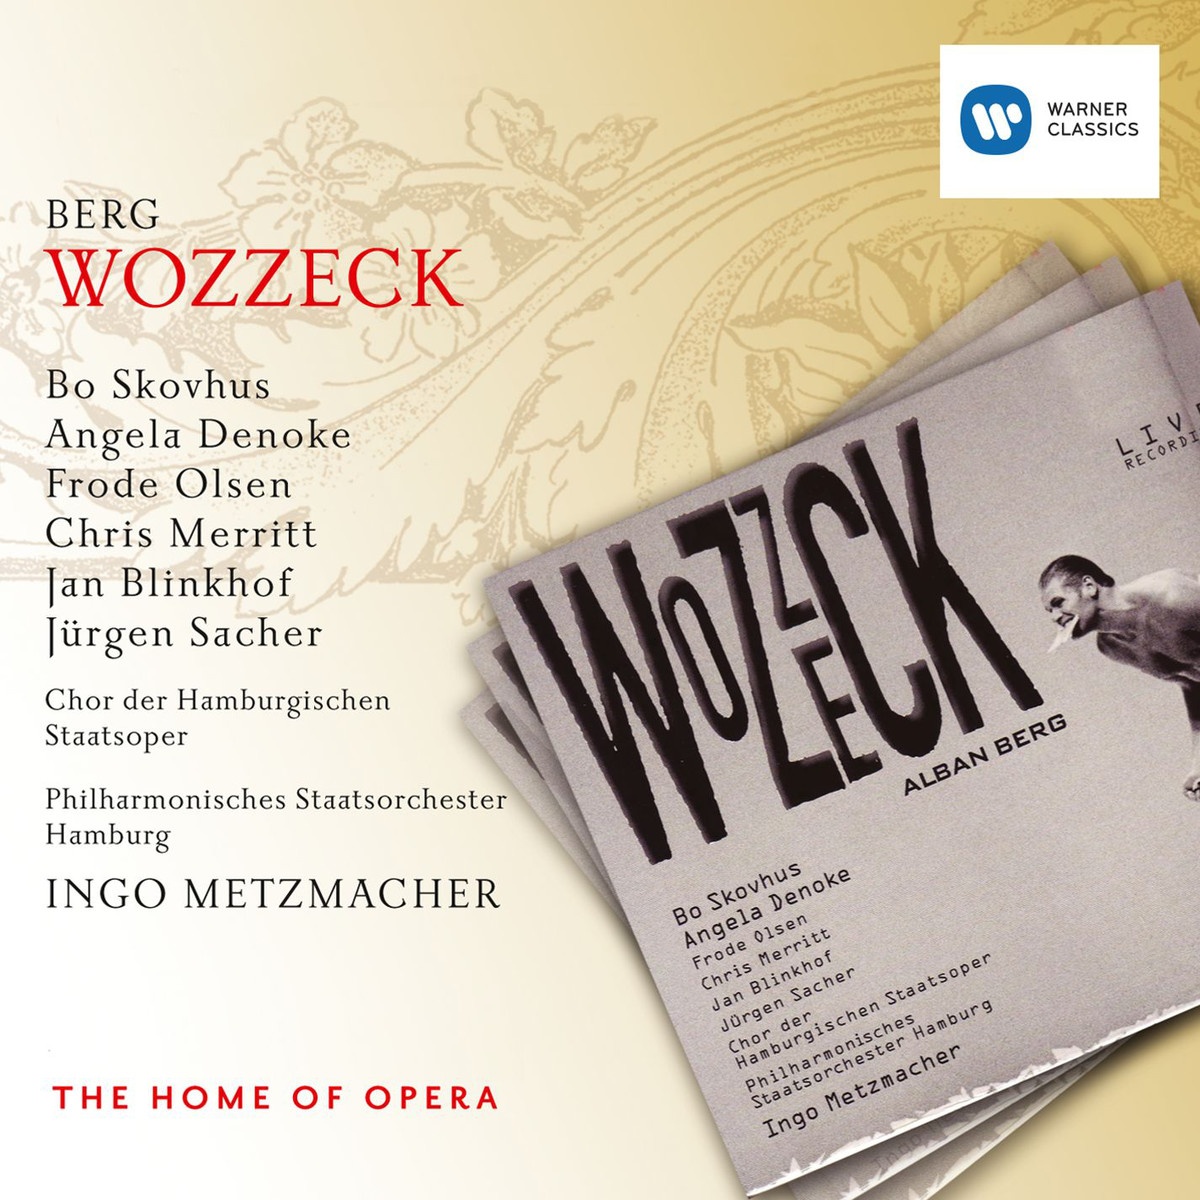 Wozzeck  Oper in 3 Akten, Erster Akt: Du, der Platz ist verflucht! 2. Szene: Wozzeck  Andres